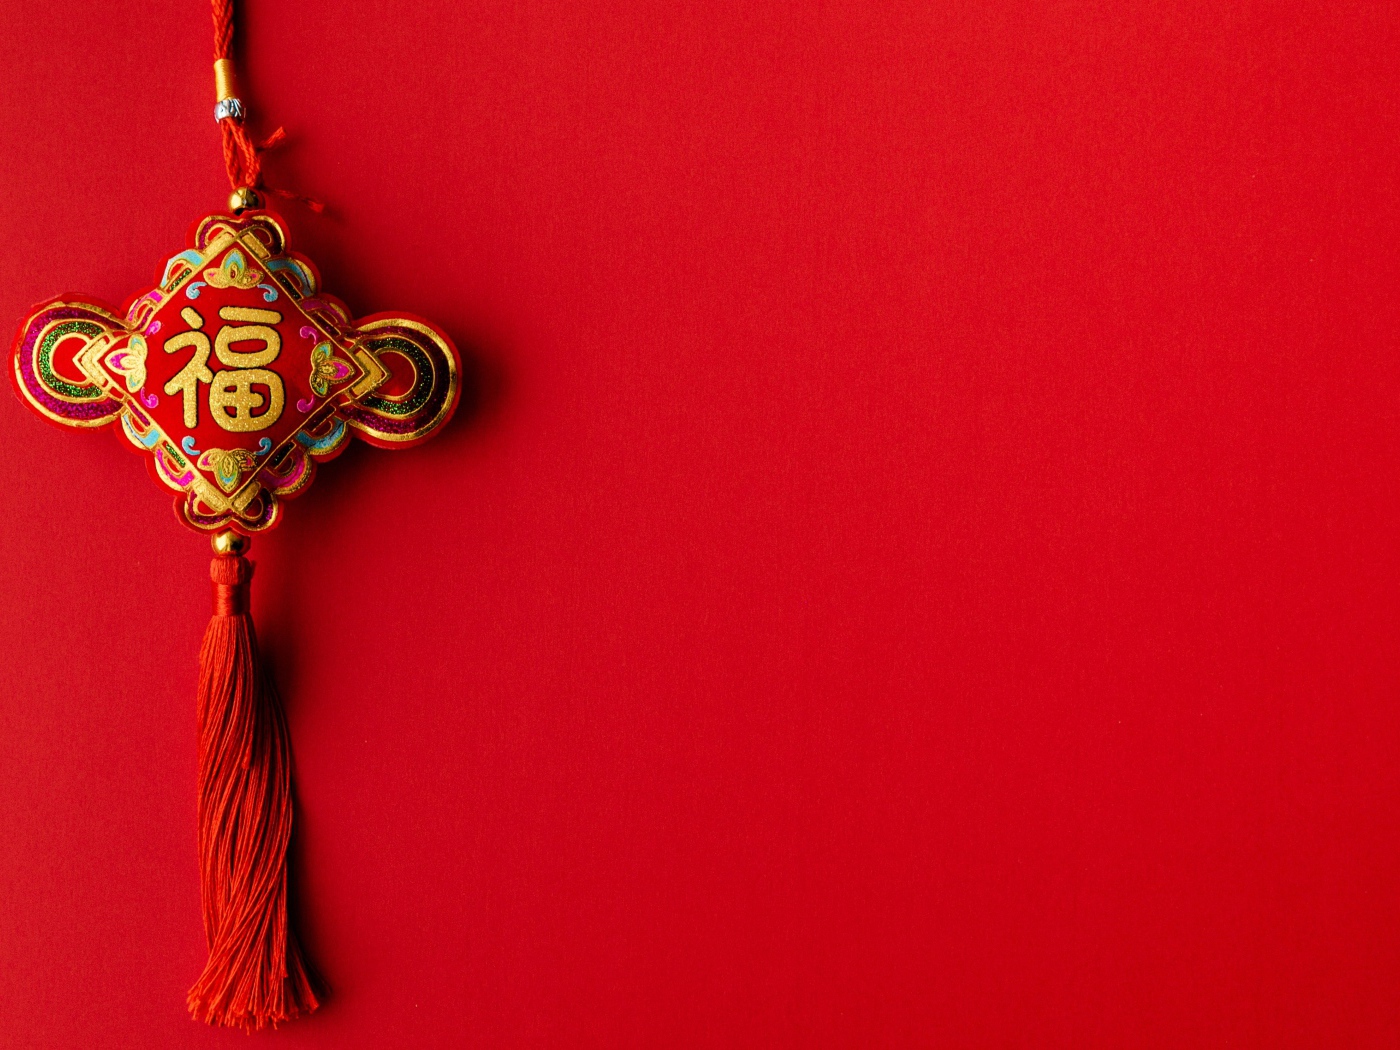 Украшение для китайского нового года на красном фоне